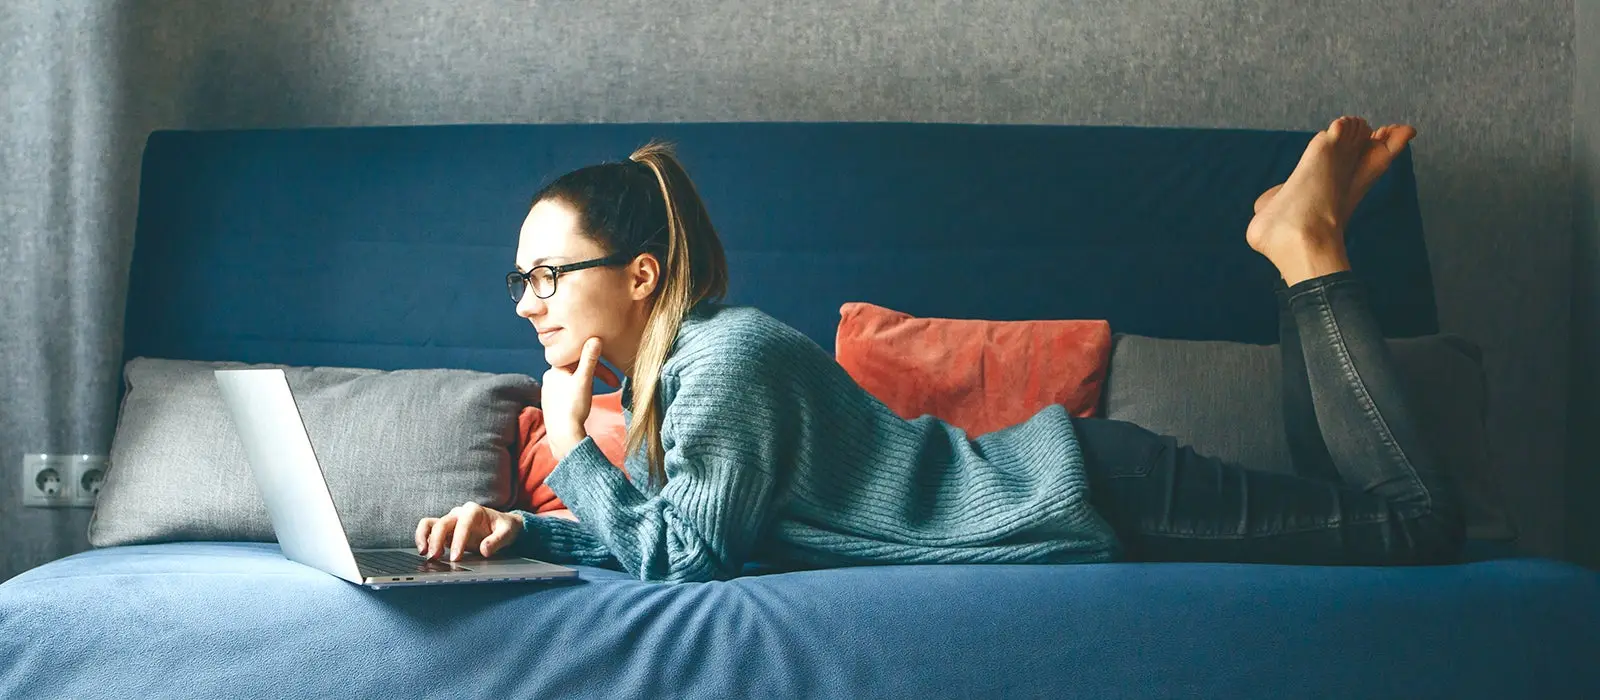 Mujer joven recostada sobre un sofa color azul trabajando en su computador 